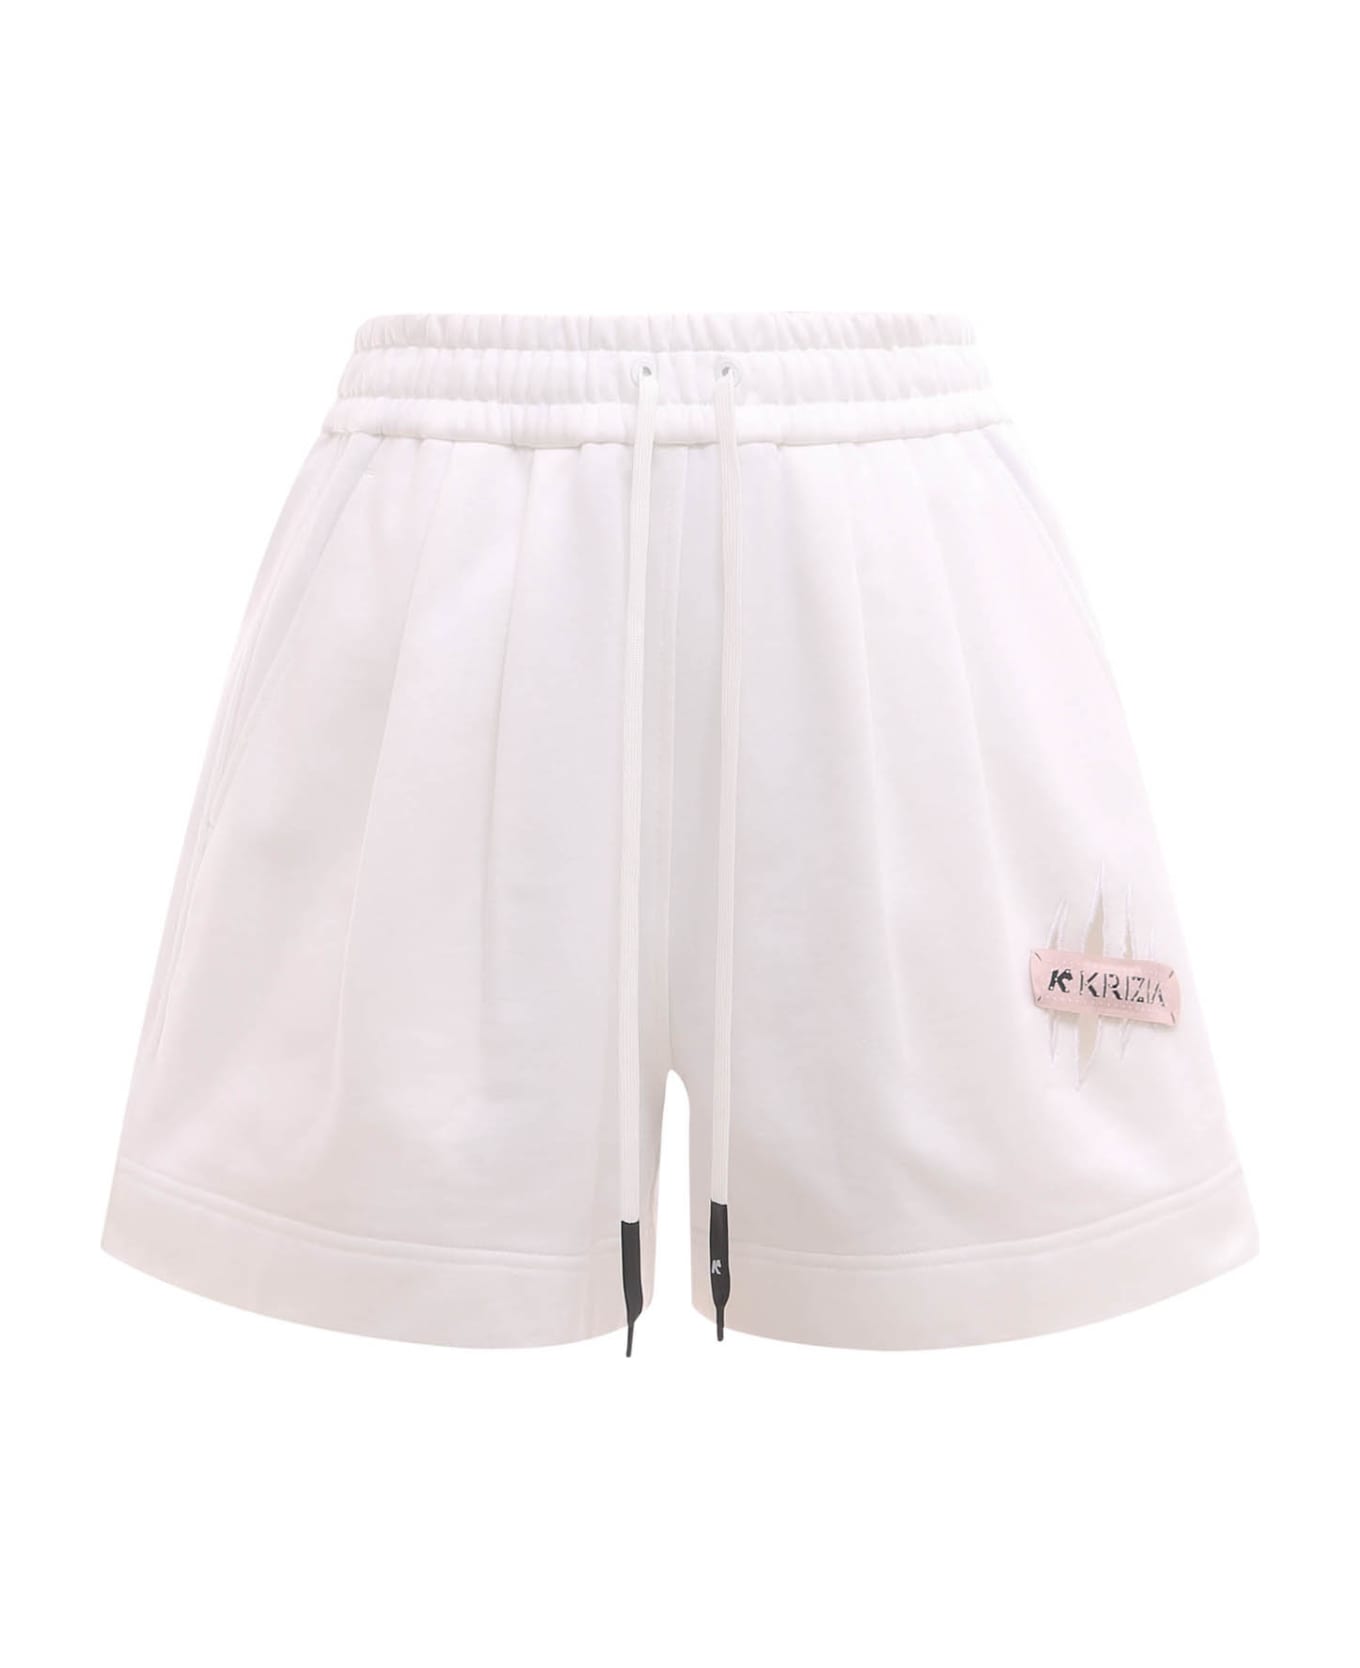 K Krizia Shorts - White ショートパンツ